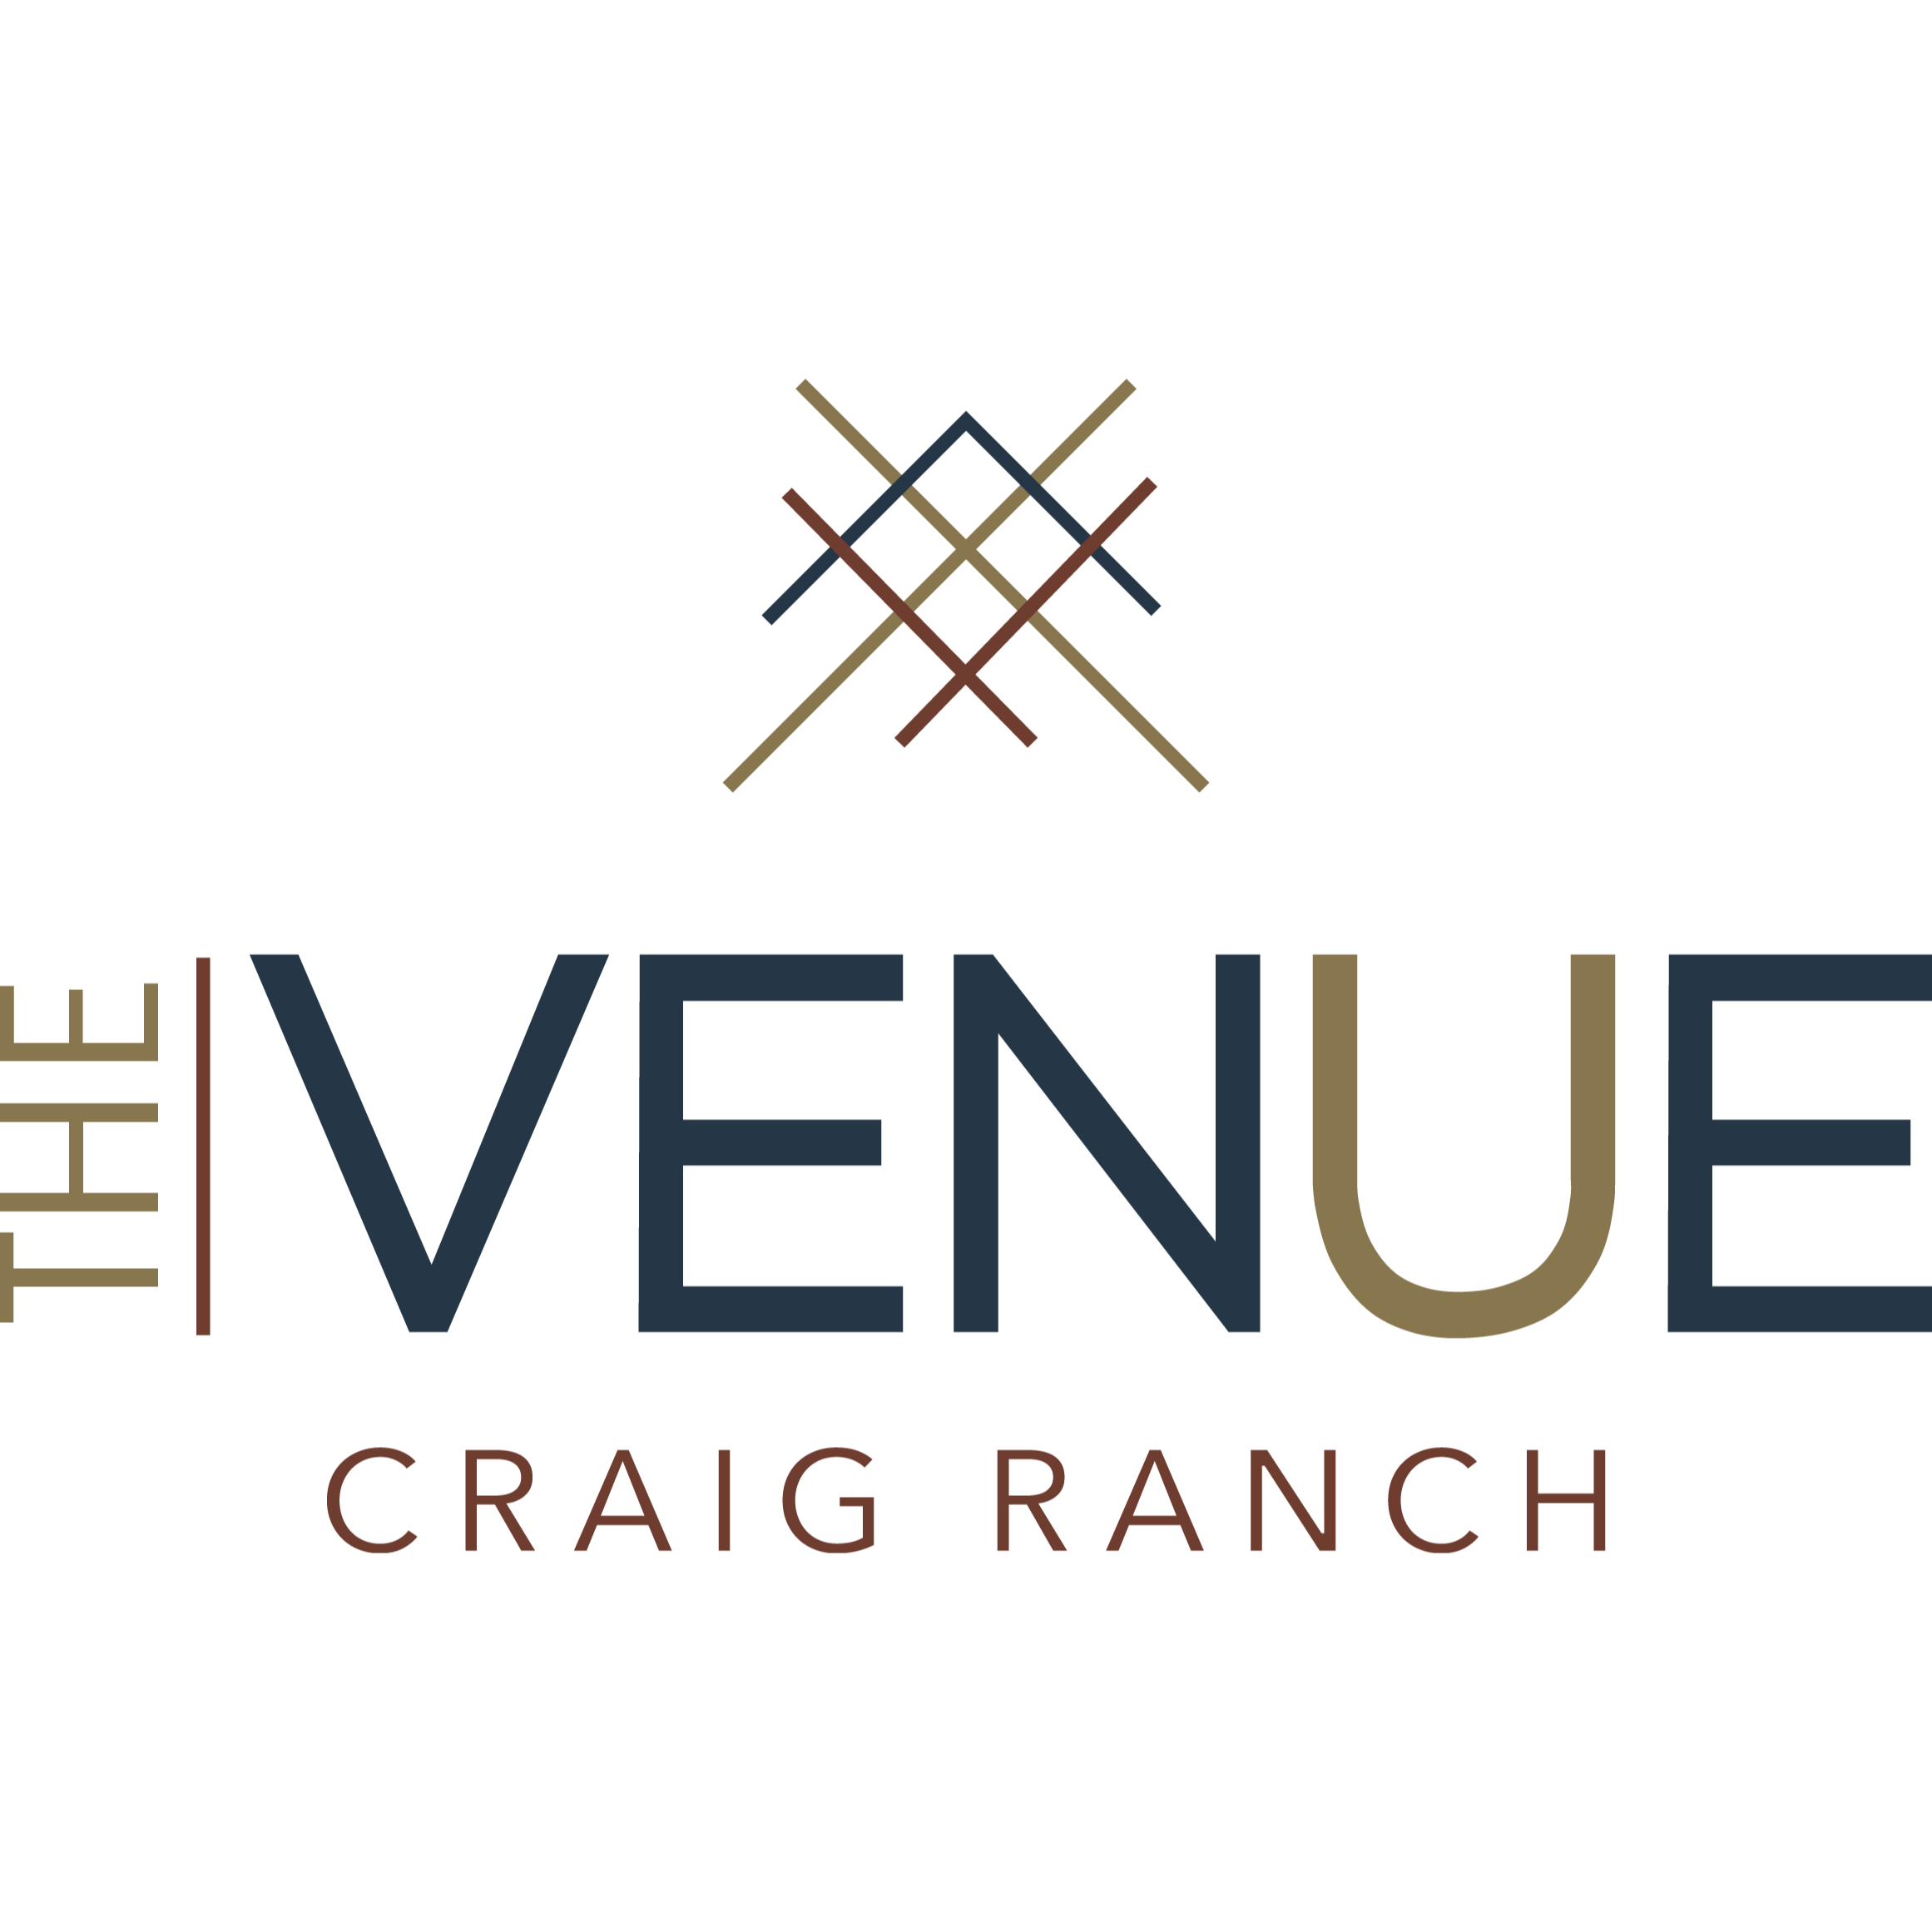 The Venue Craig Ranch